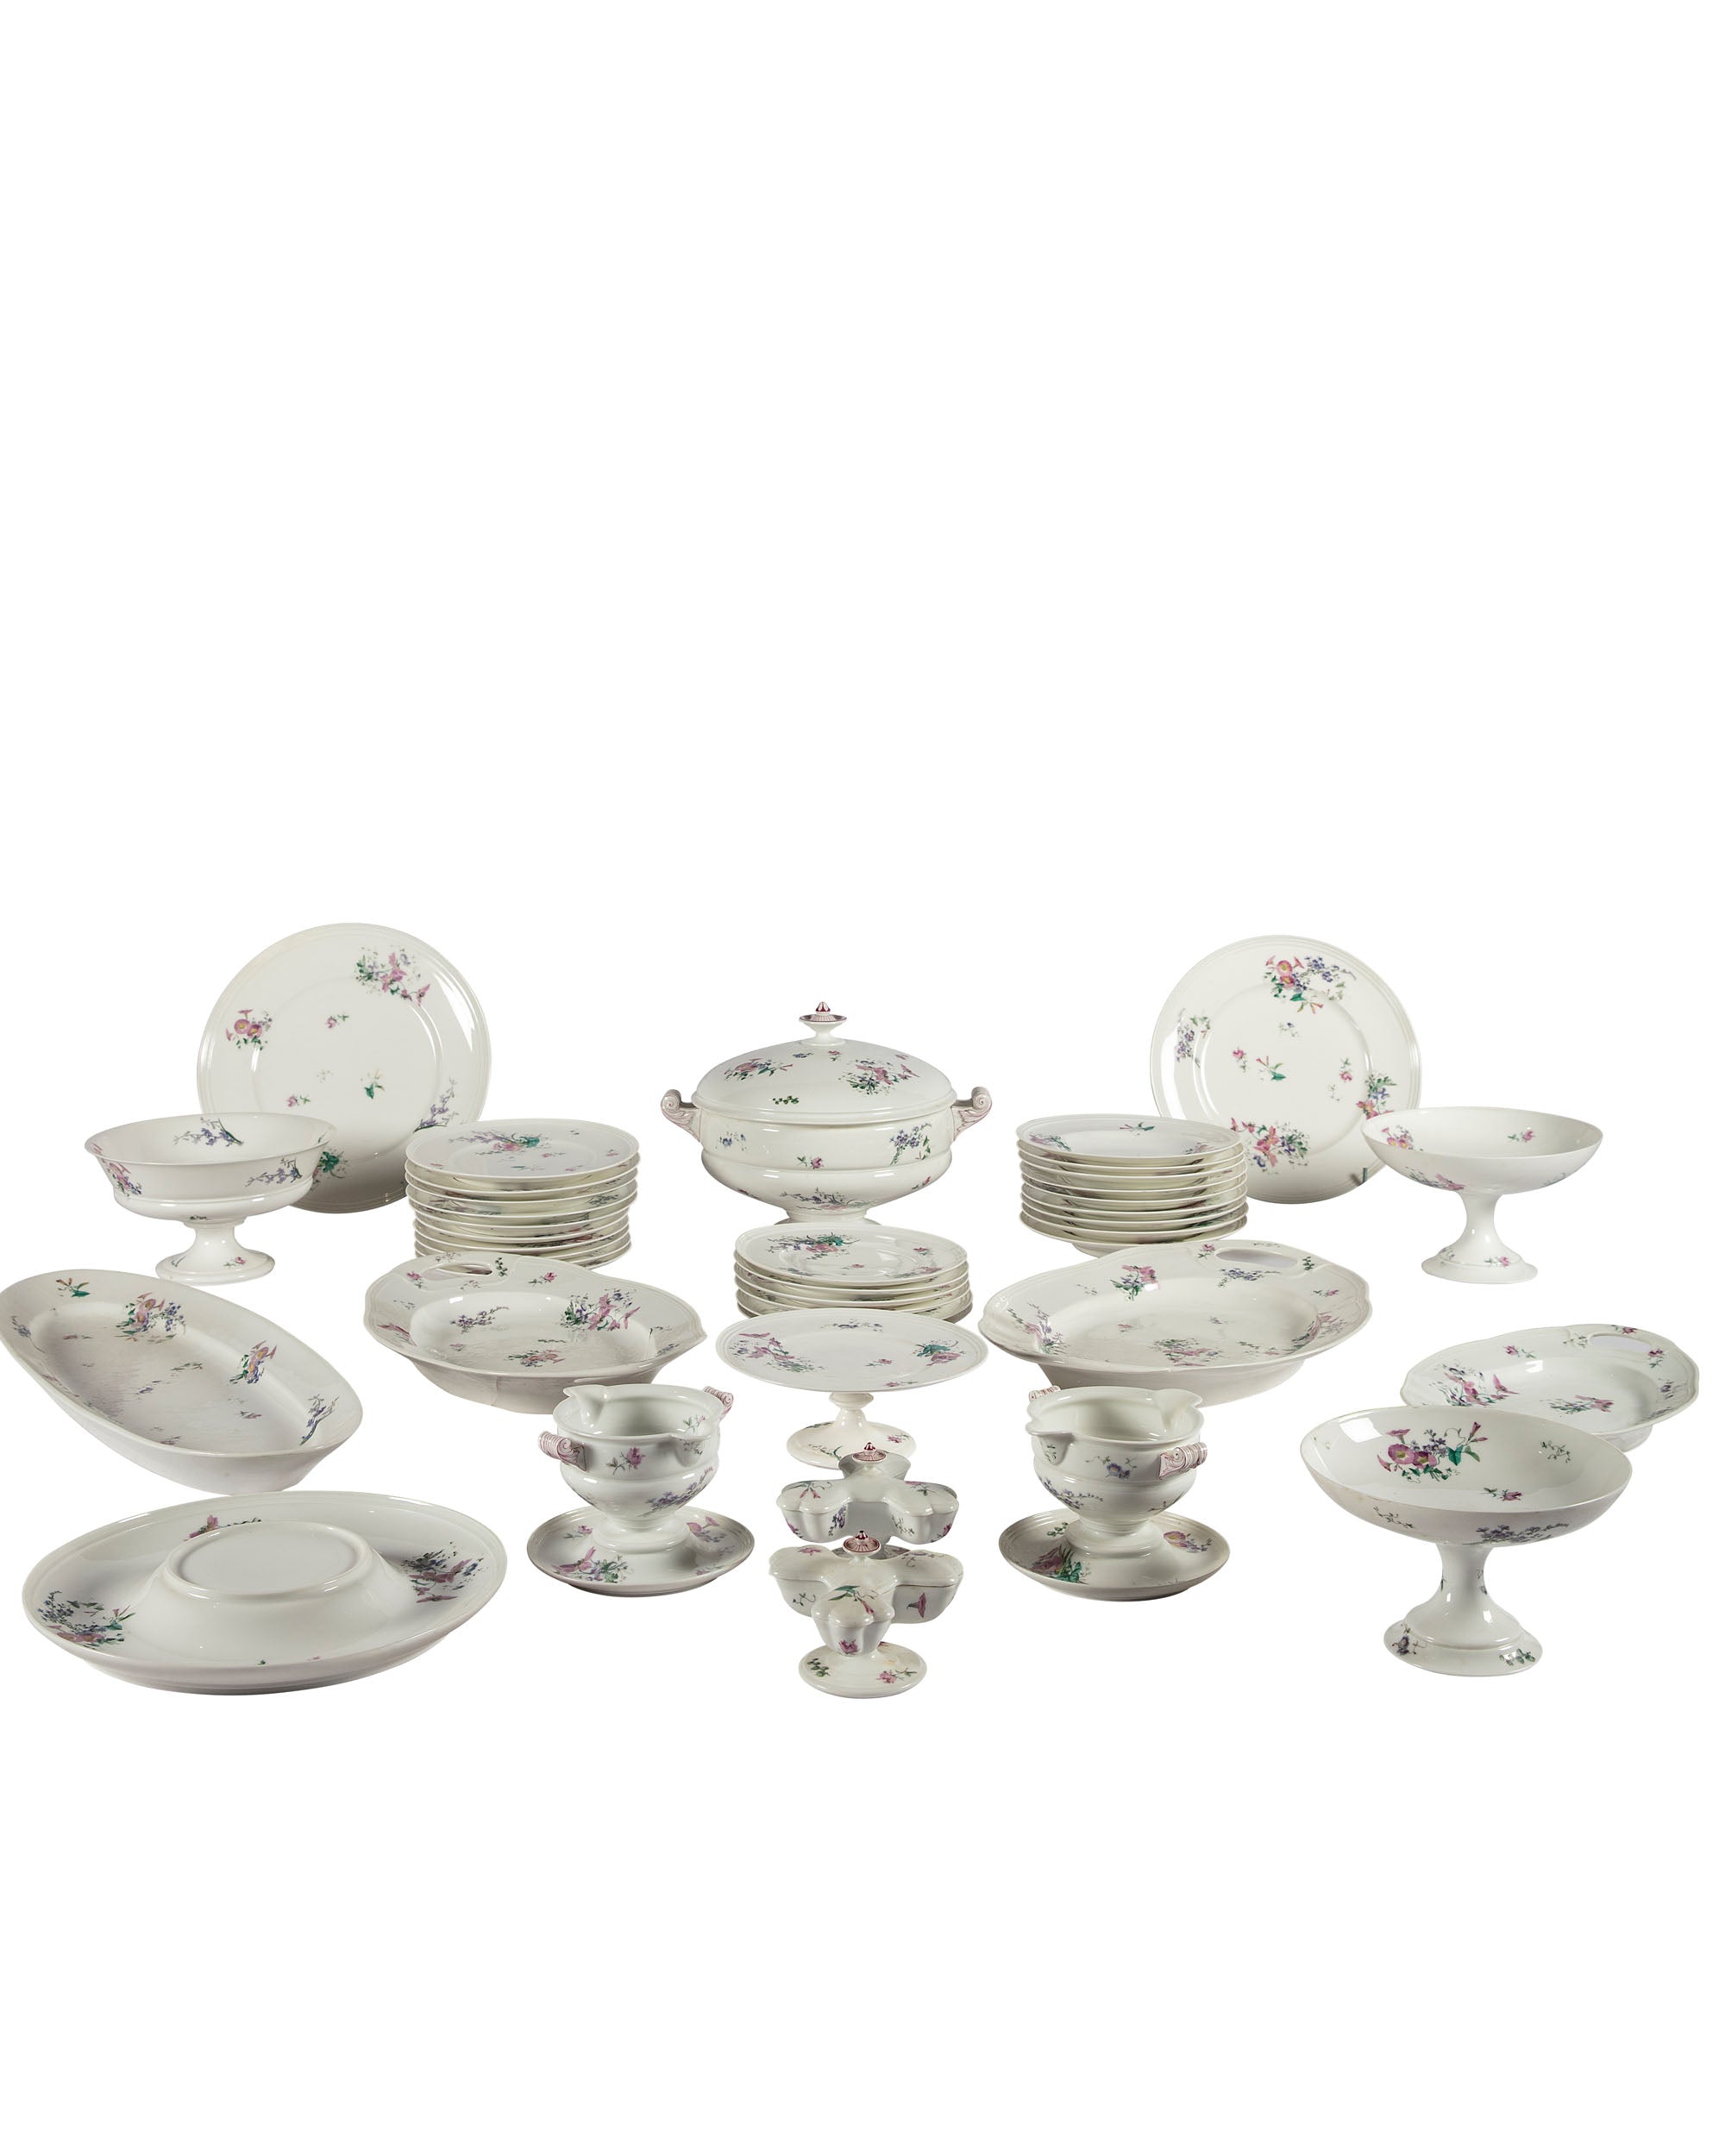 Porcelain tableware AD. Hache & Pepin Lehalleur. Vierzon, Paris. 1878. 60 pieces